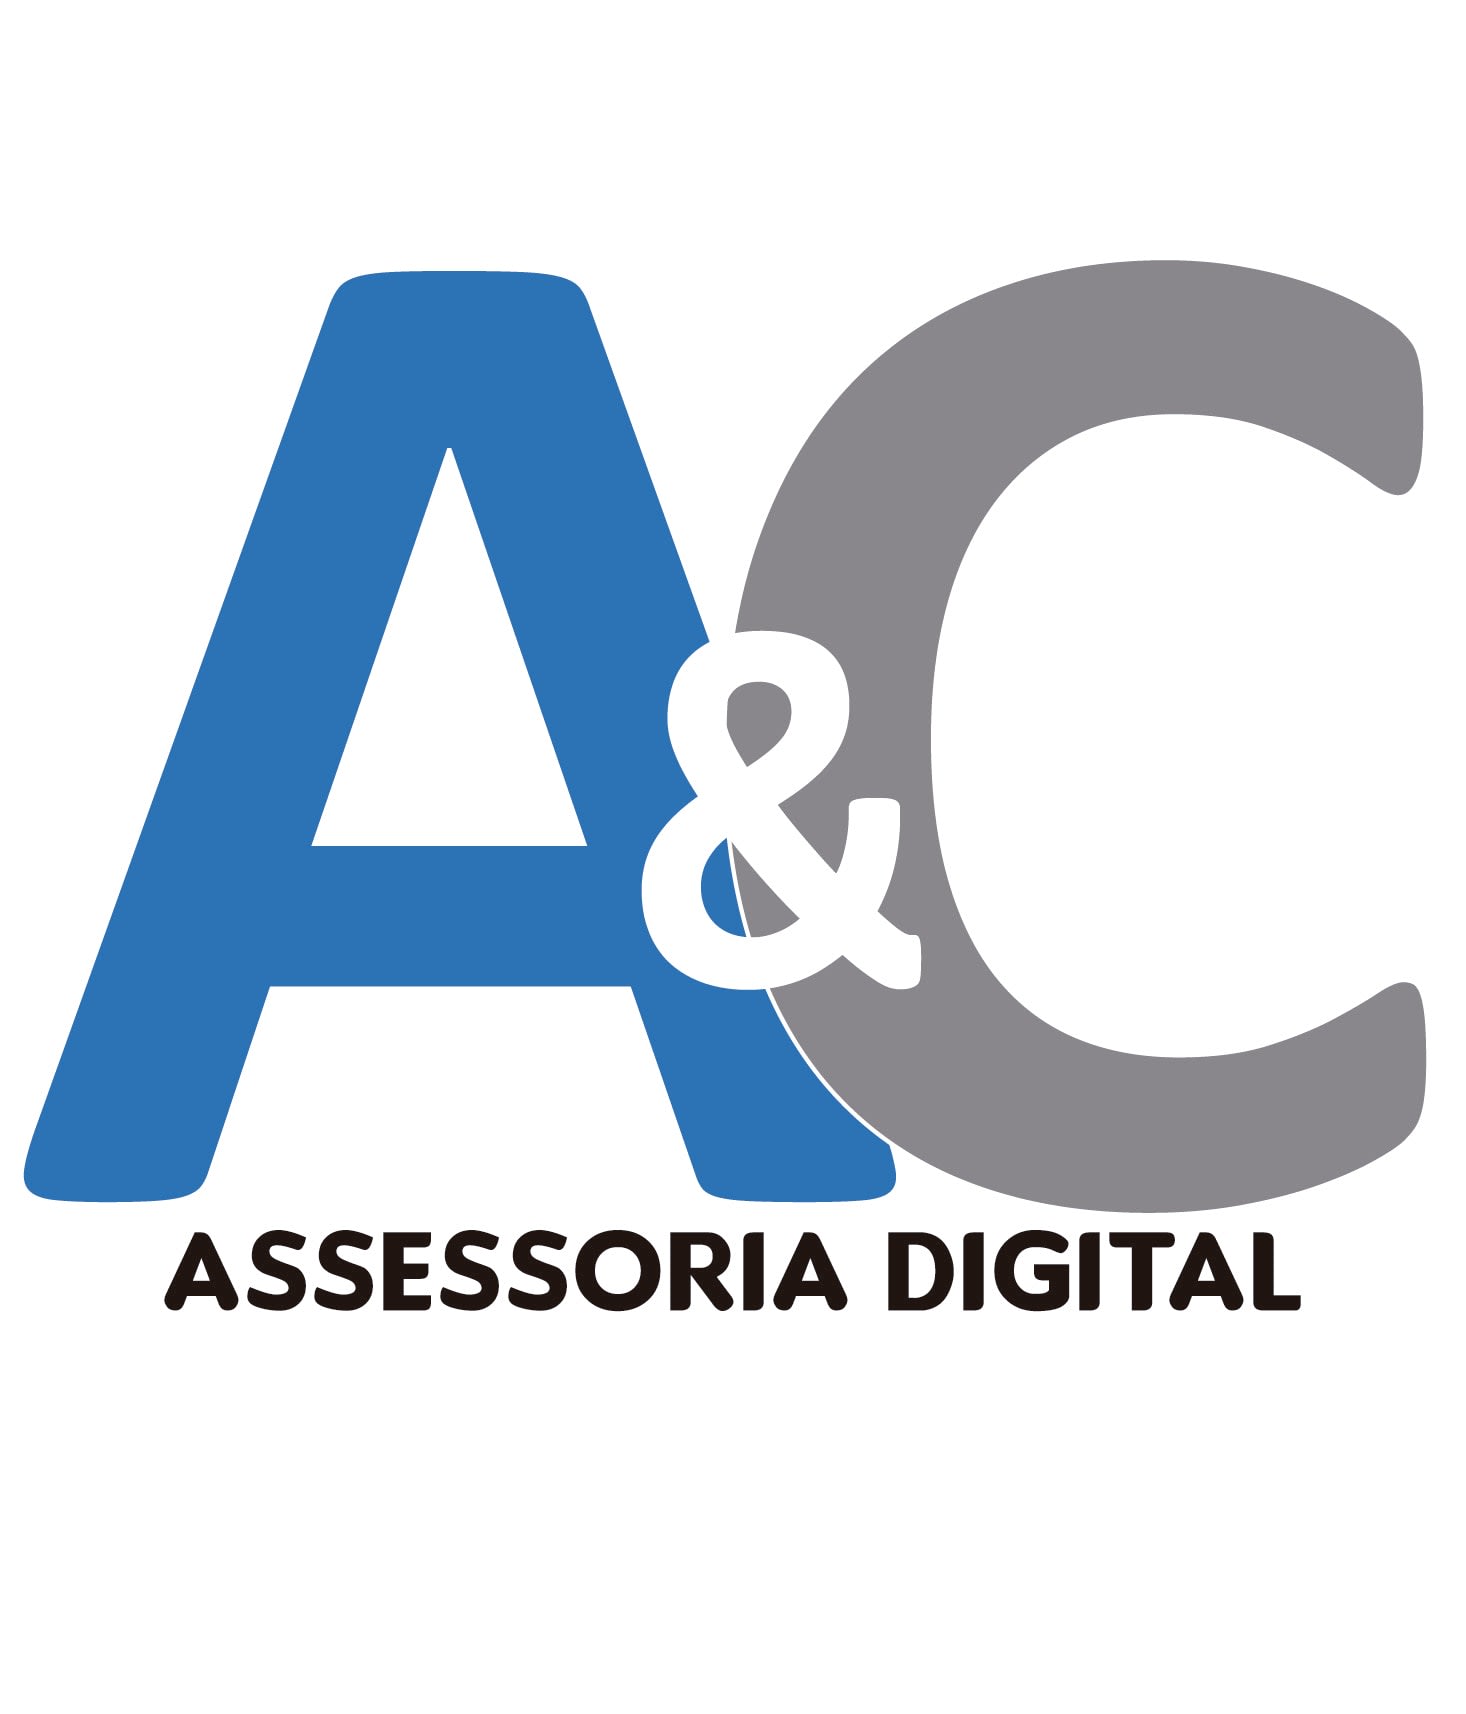 A&C Assessoria Digital